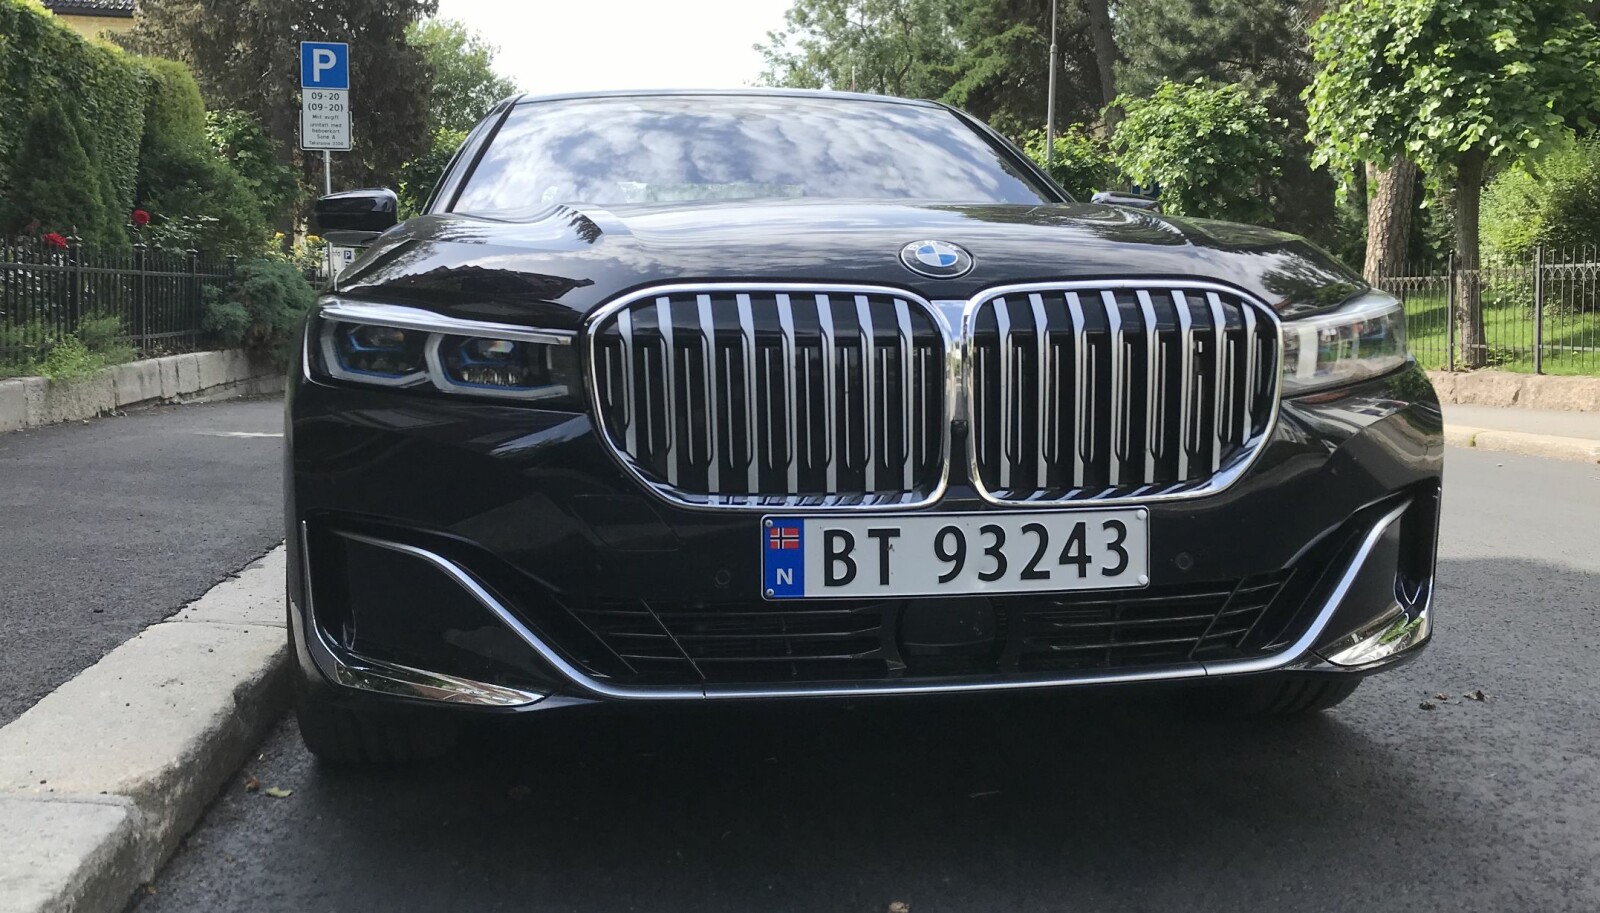 NYREGRILL: Gal etter grill og det ypperste innen komfort? Her er nye BMW 7-serie.